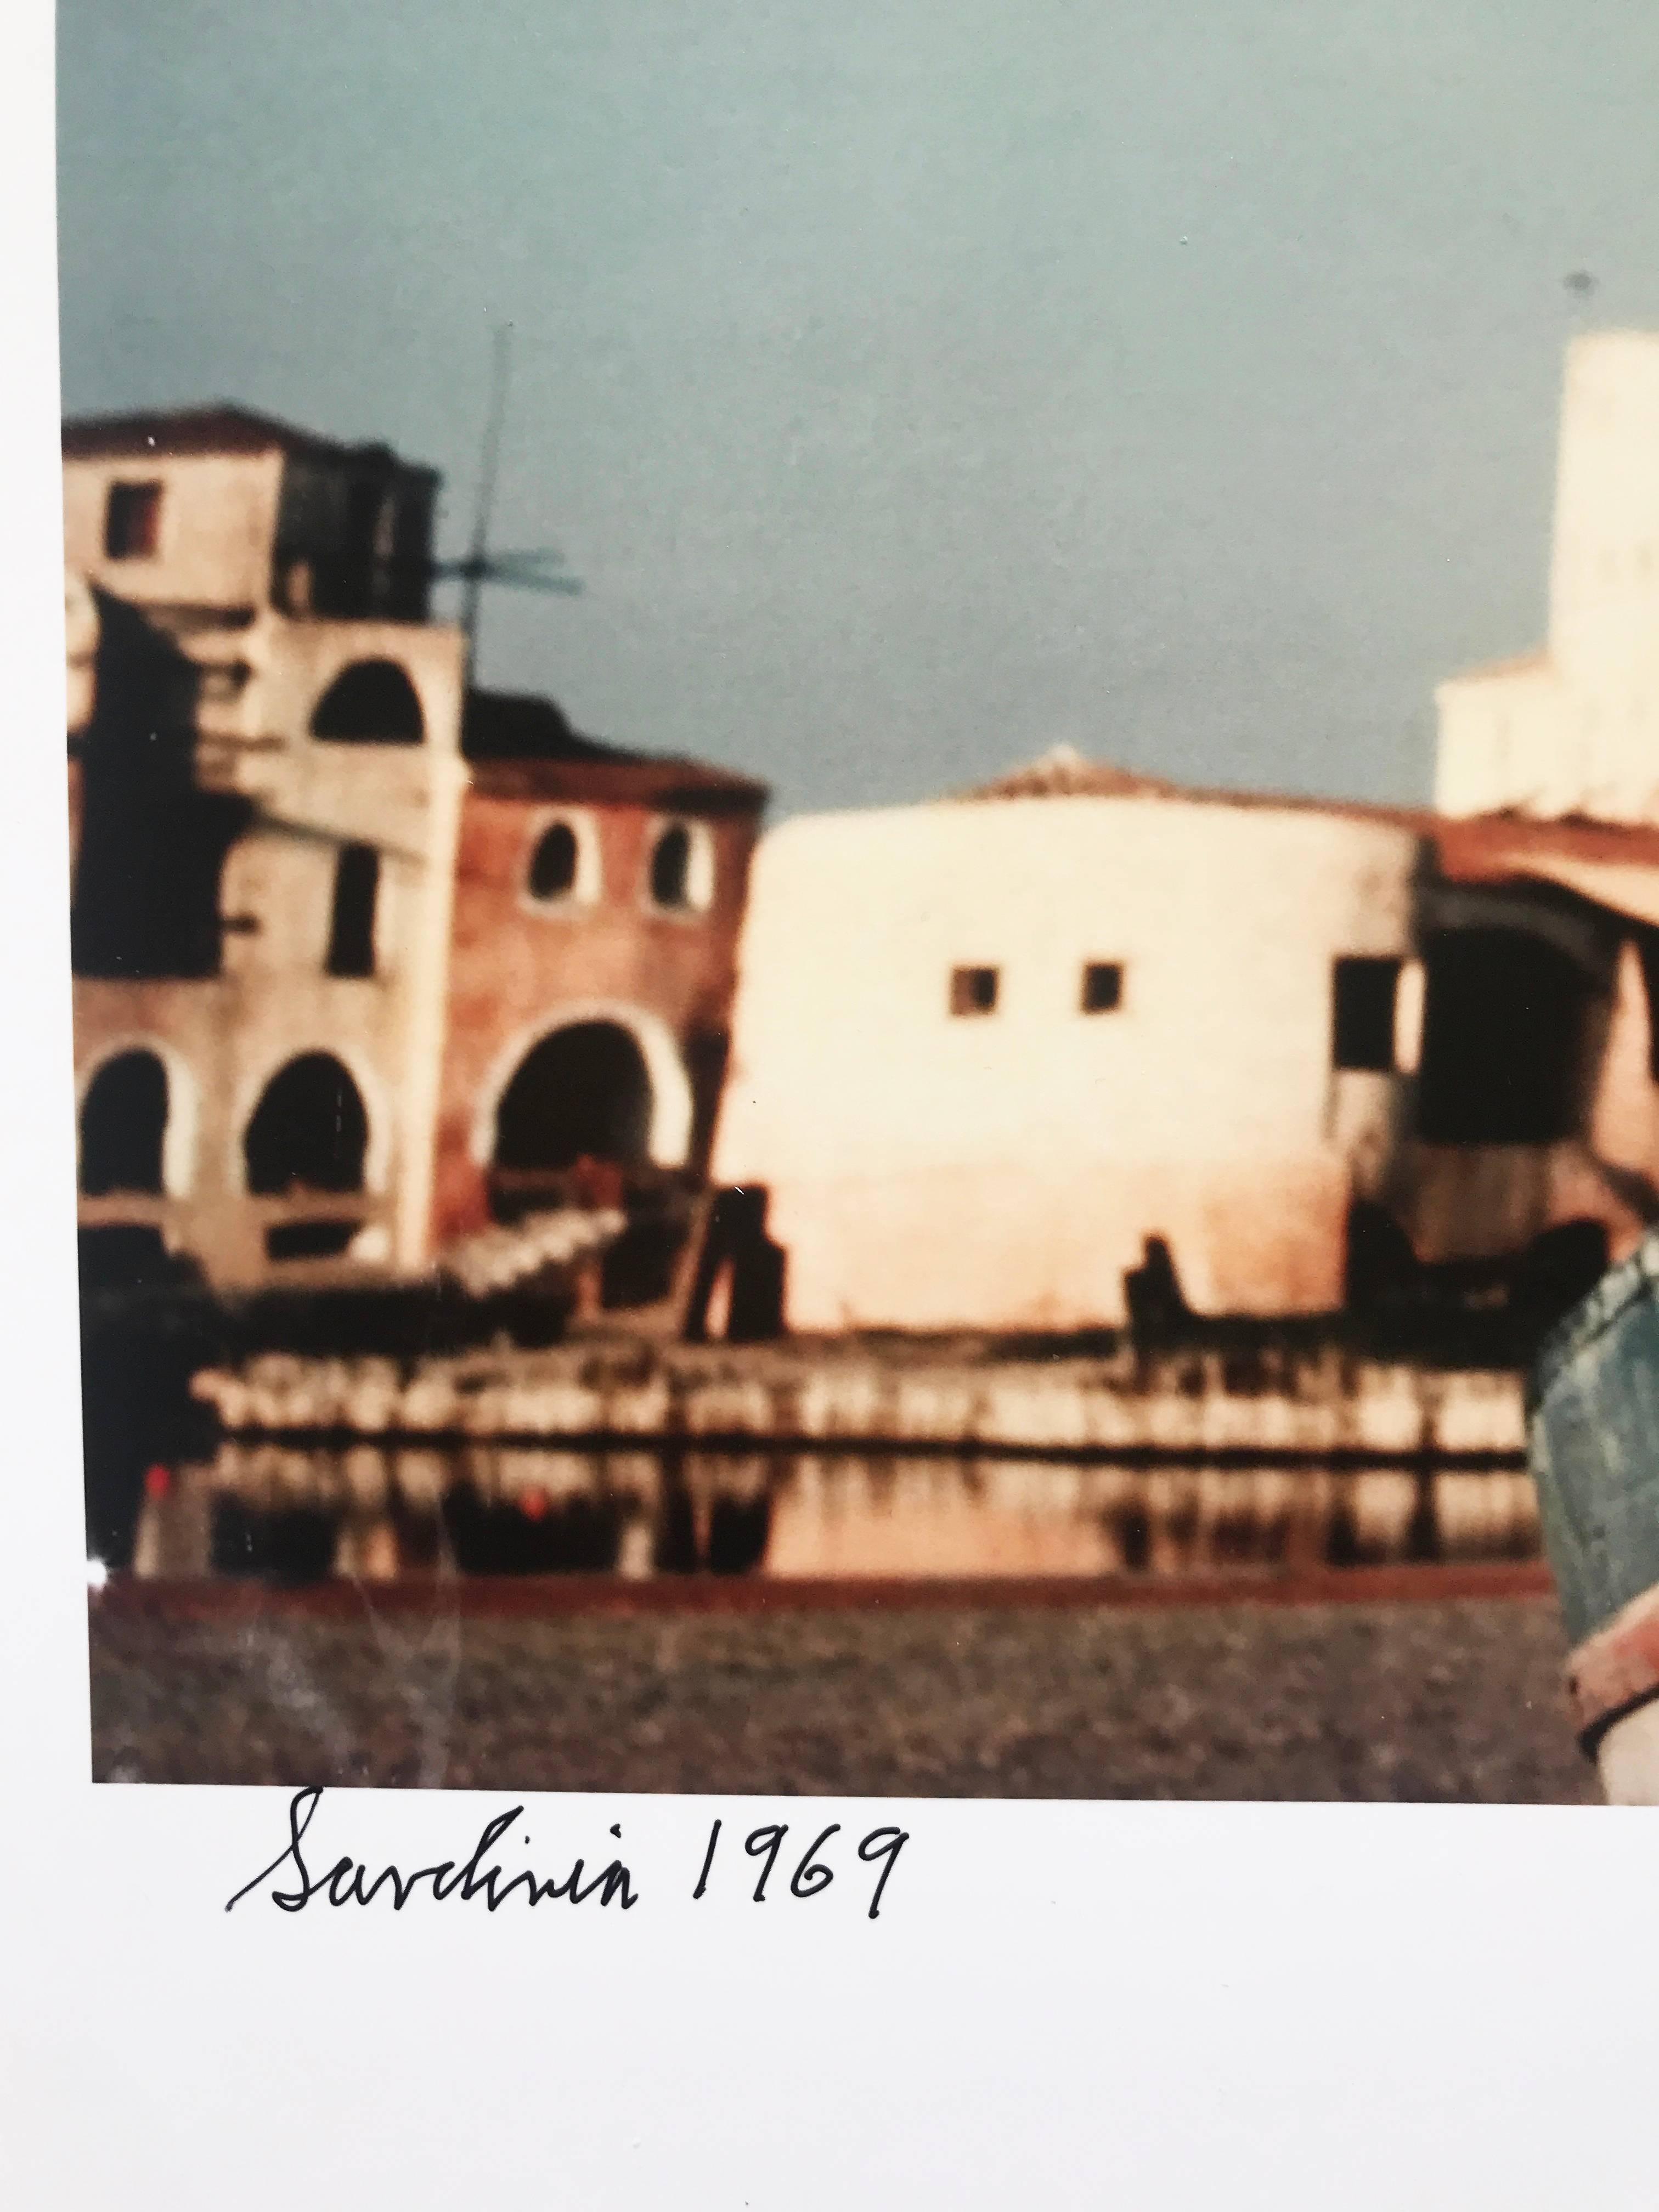 Sardinien, Italien, zeitgenössische Farbmodefotografie 1960er Jahre – Photograph von Ormond Gigli